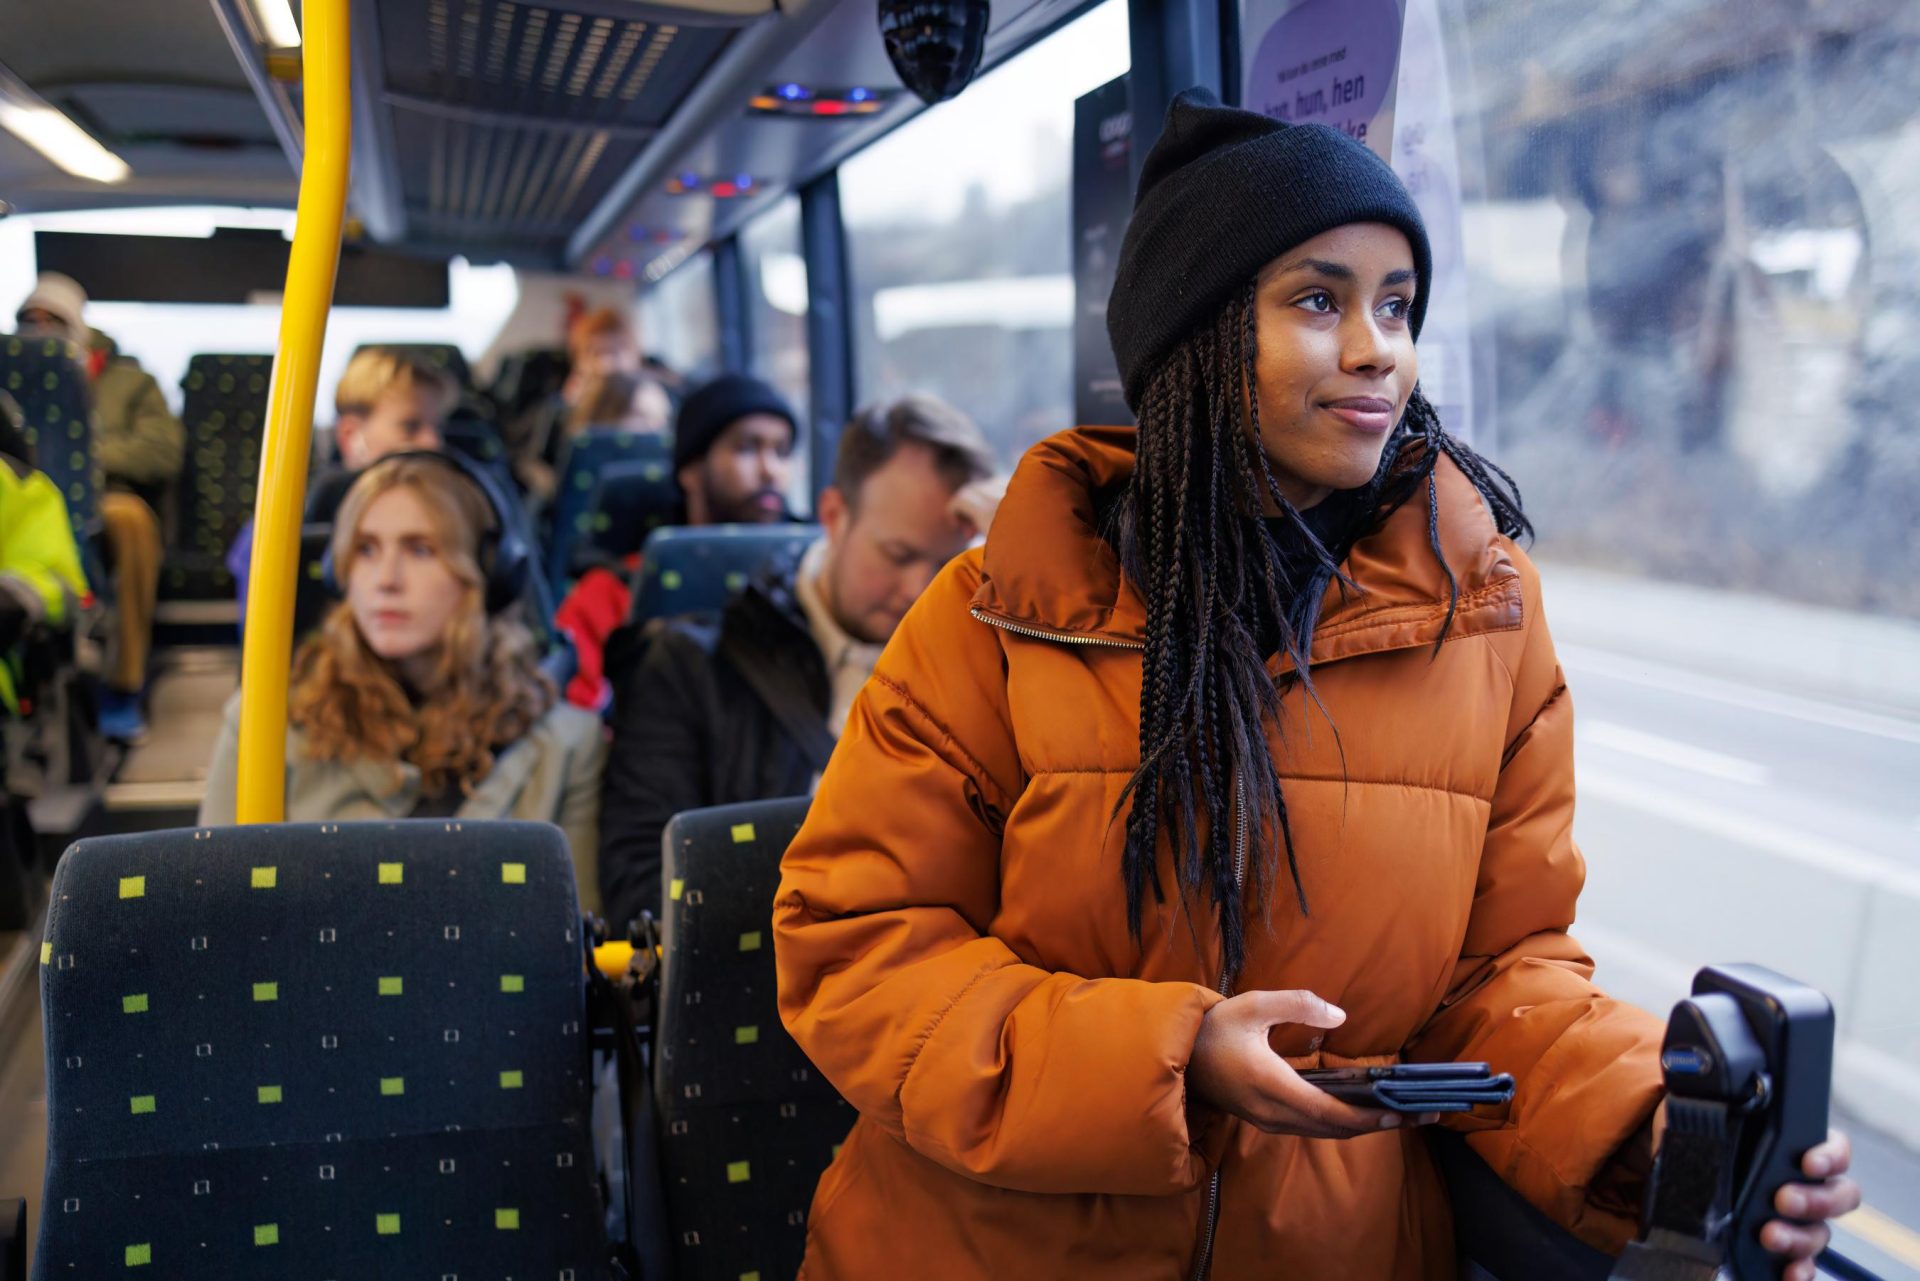 En ung kvinne i en oransje jakke som holder en smarttelefon ser ut av vinduet på en buss fylt med passasjerer.